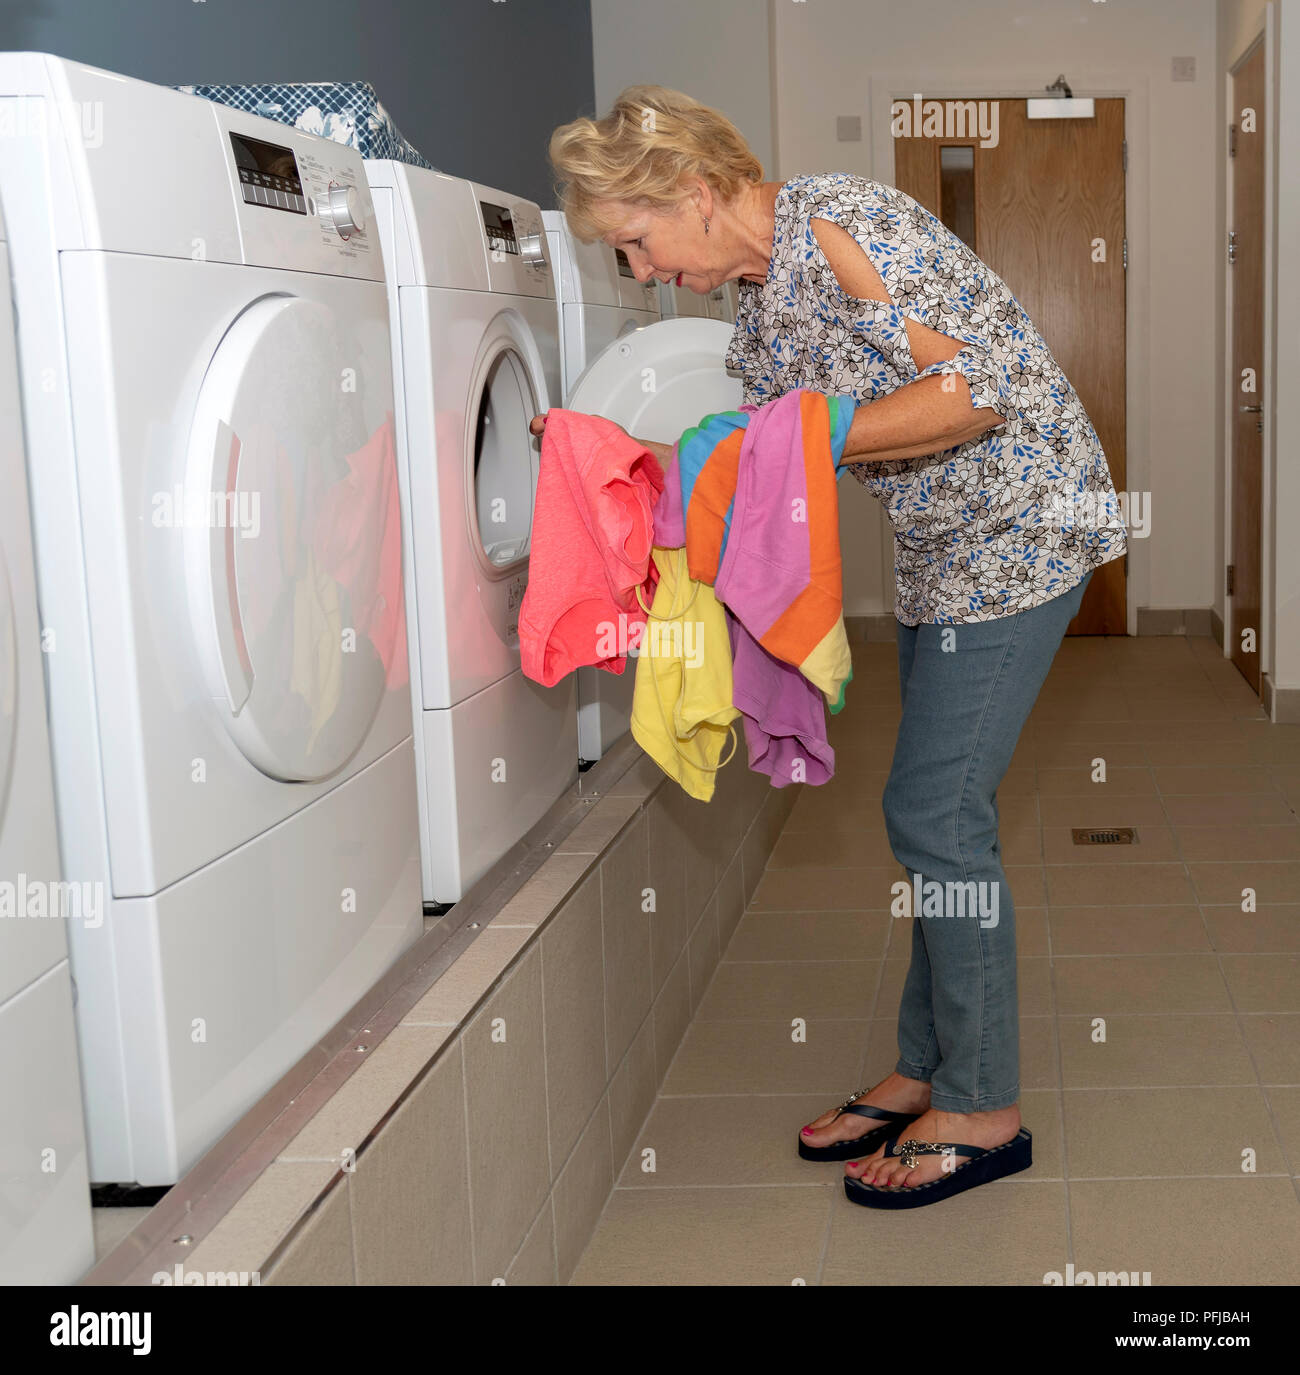 Ältere woamn Entfernen getrocknete Kleidung von einem Trockner in einem Waschraum Stockfoto